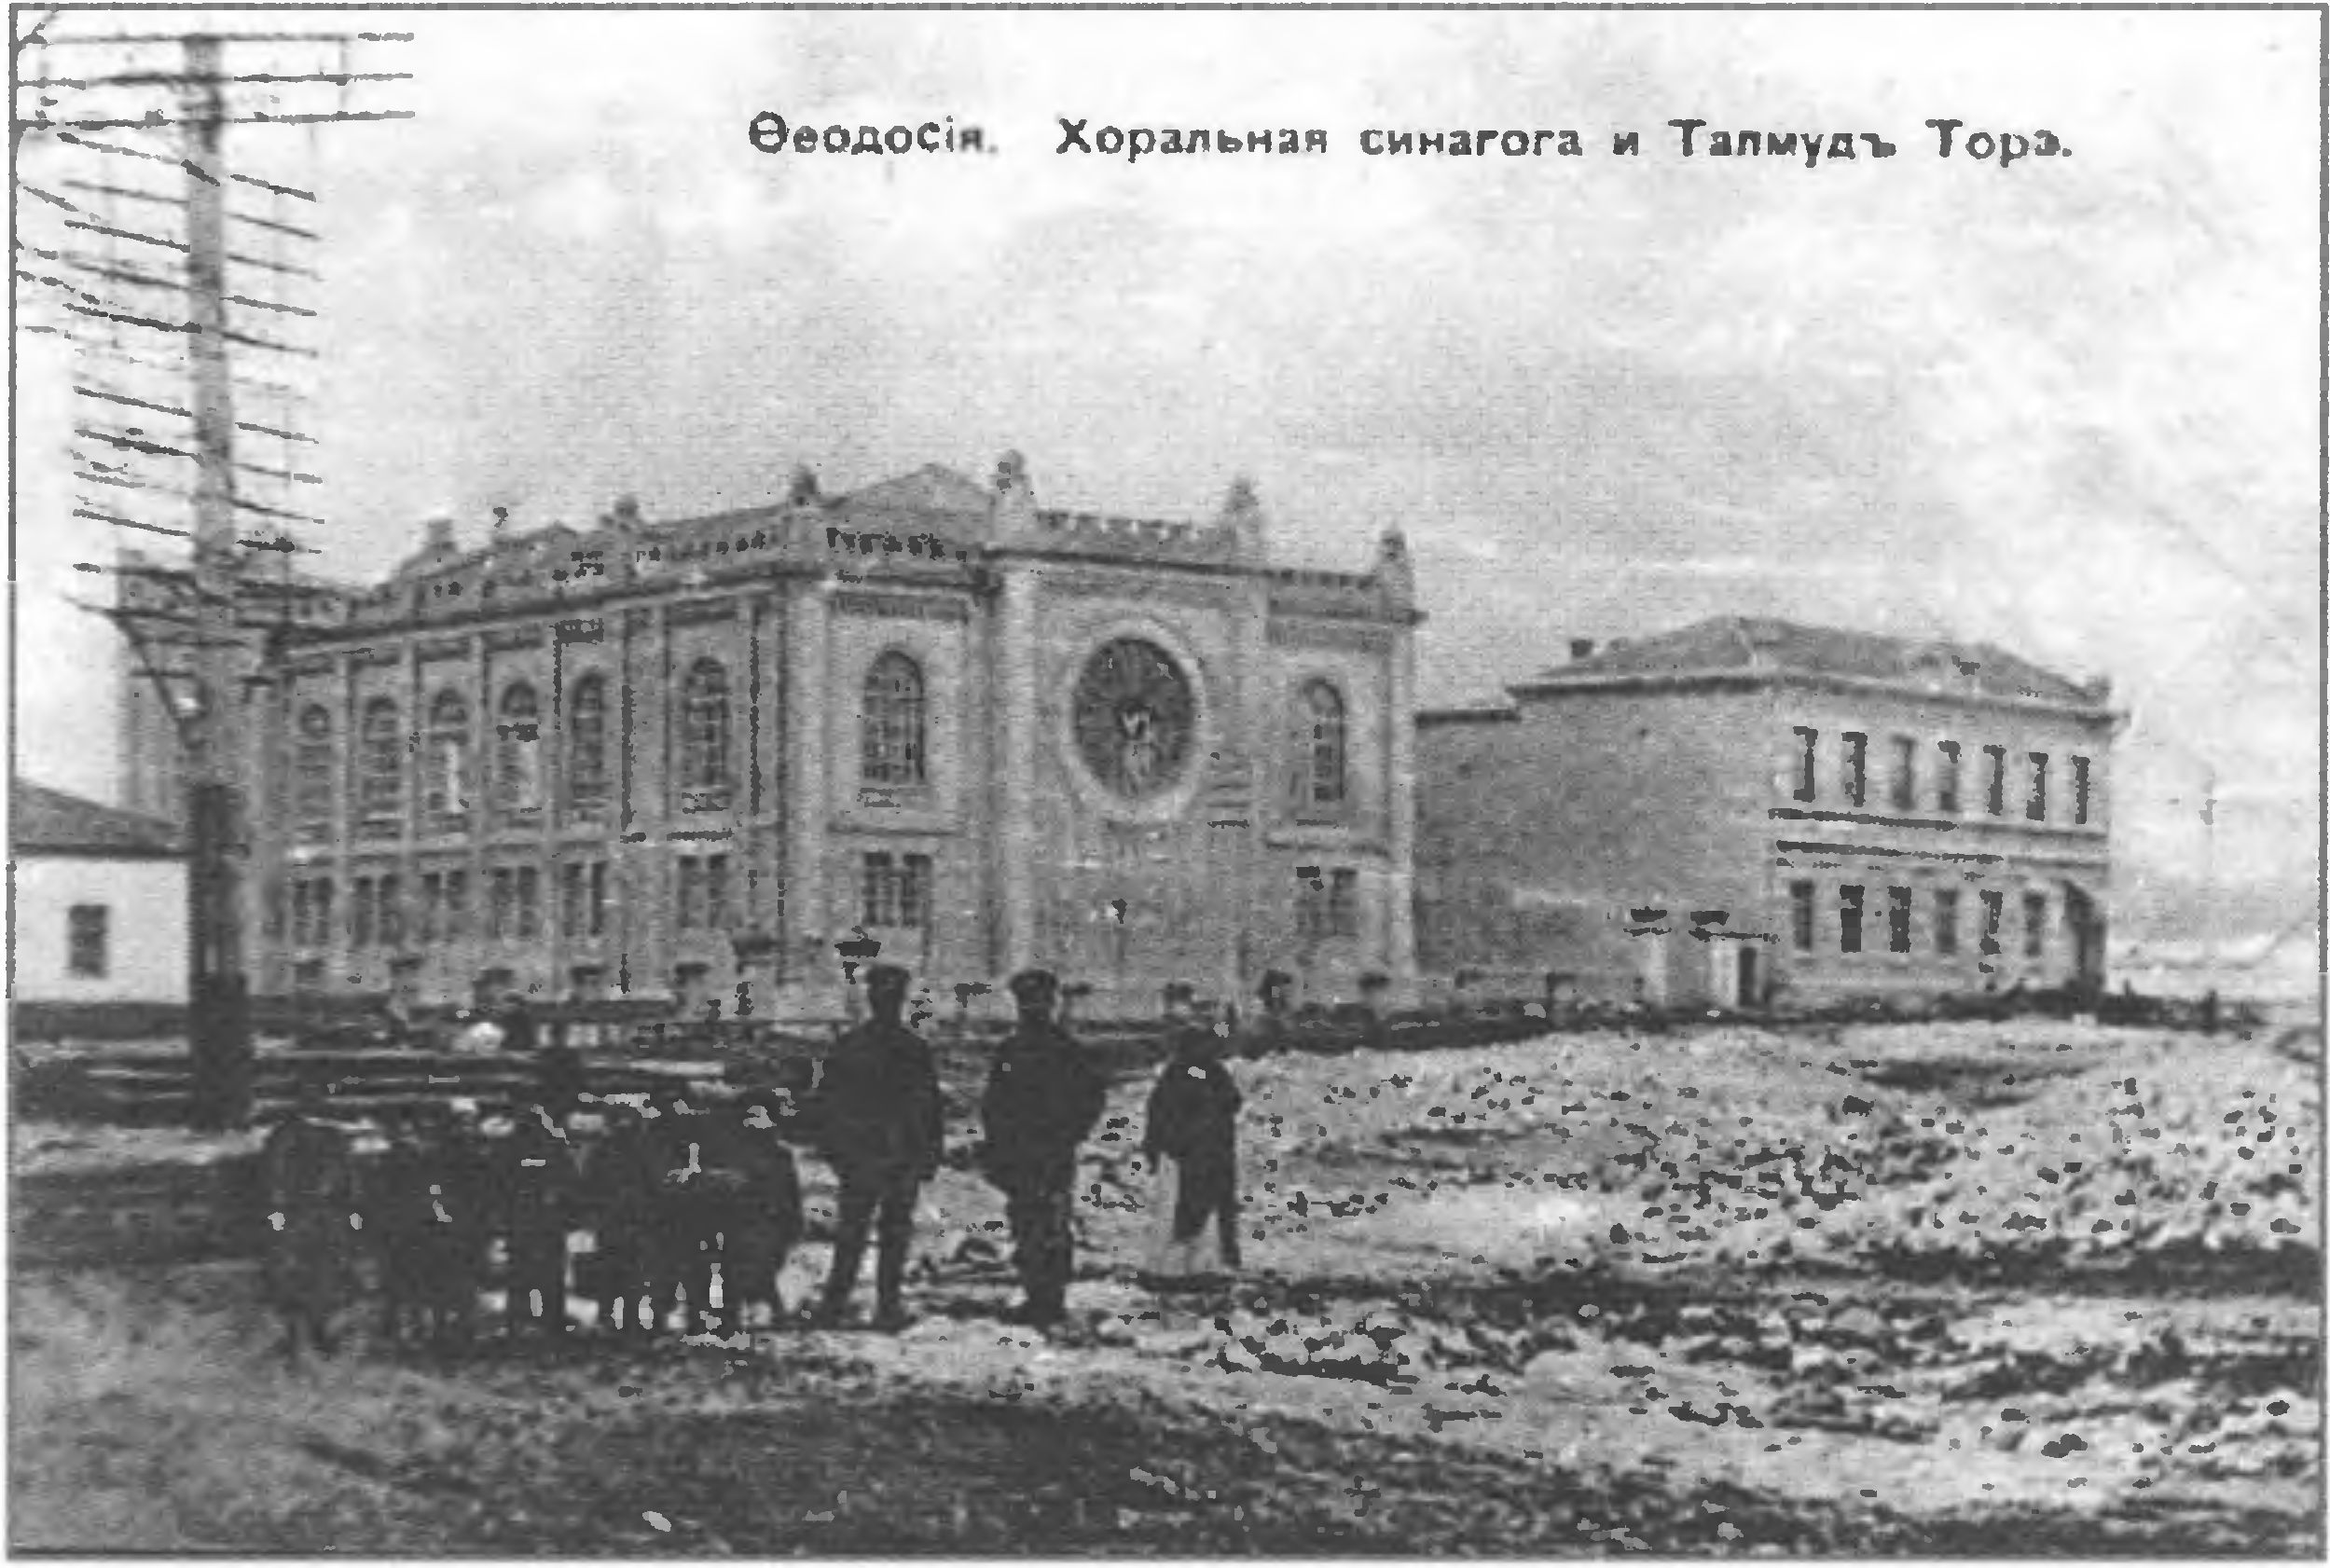 Феодосийская хоральная синагога и Талмуд Тора — религиозная школа в начале XX века